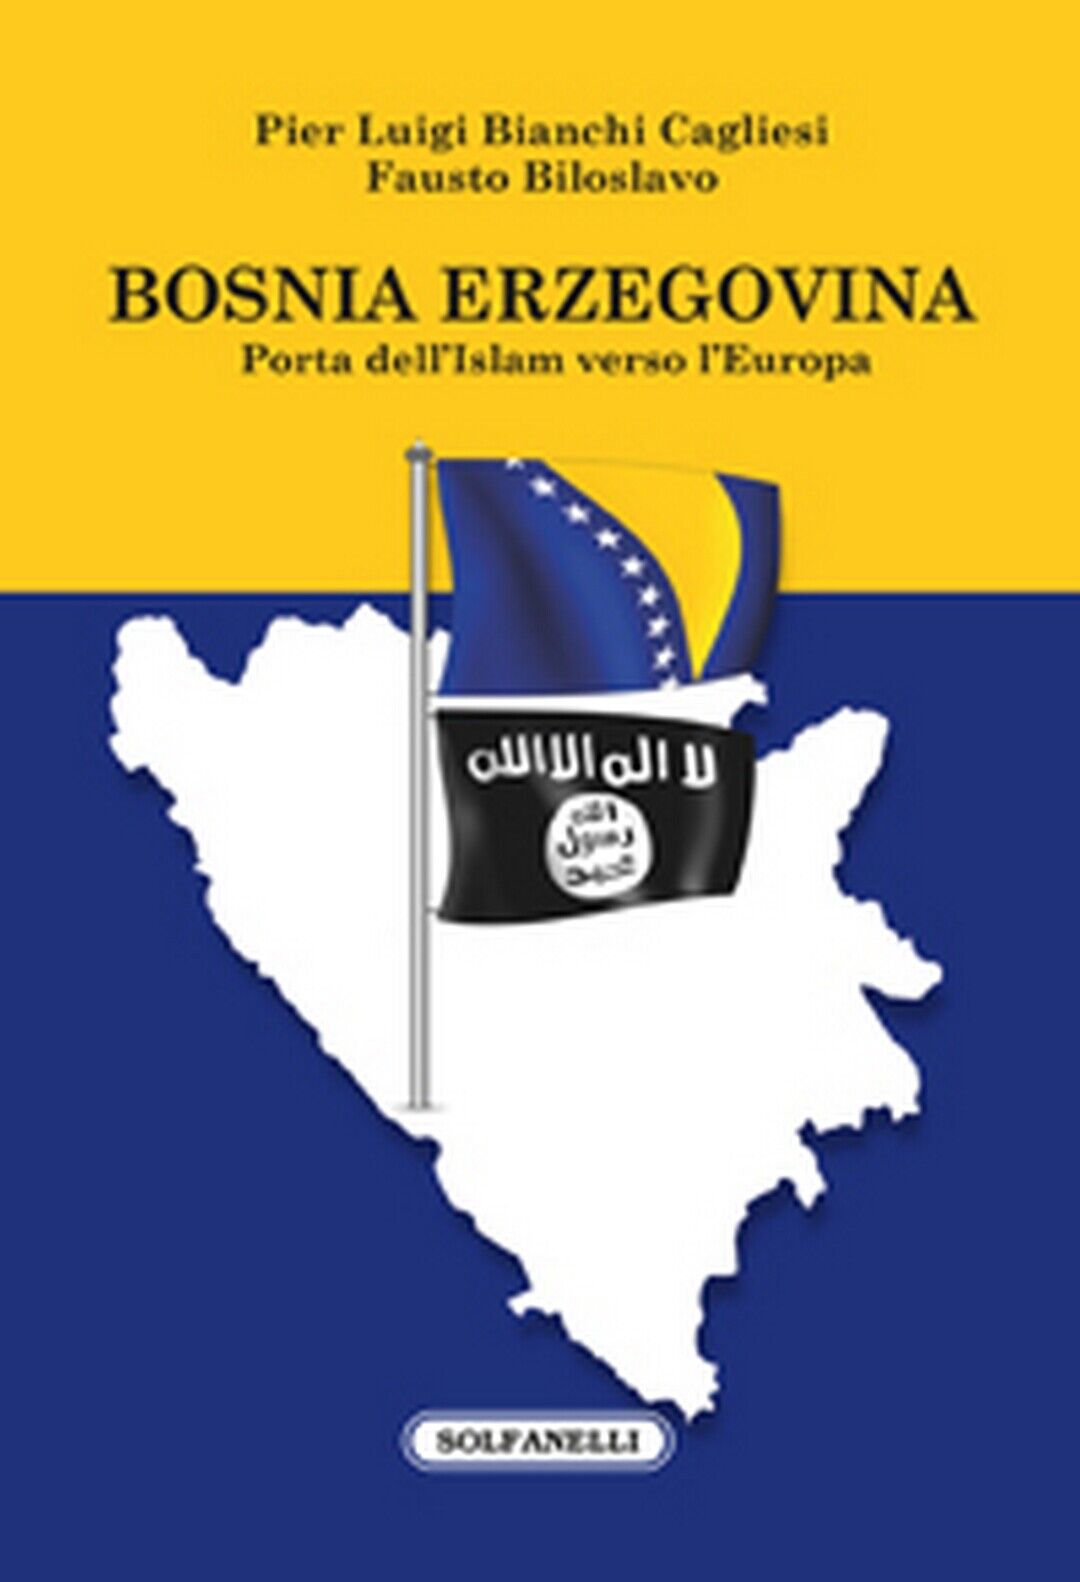 BOSNIA ERZEGOVINA PORTA DELL'ISLAM VERSO L'EUROPA, AA. VV., Solfanelli Ed. libro usato